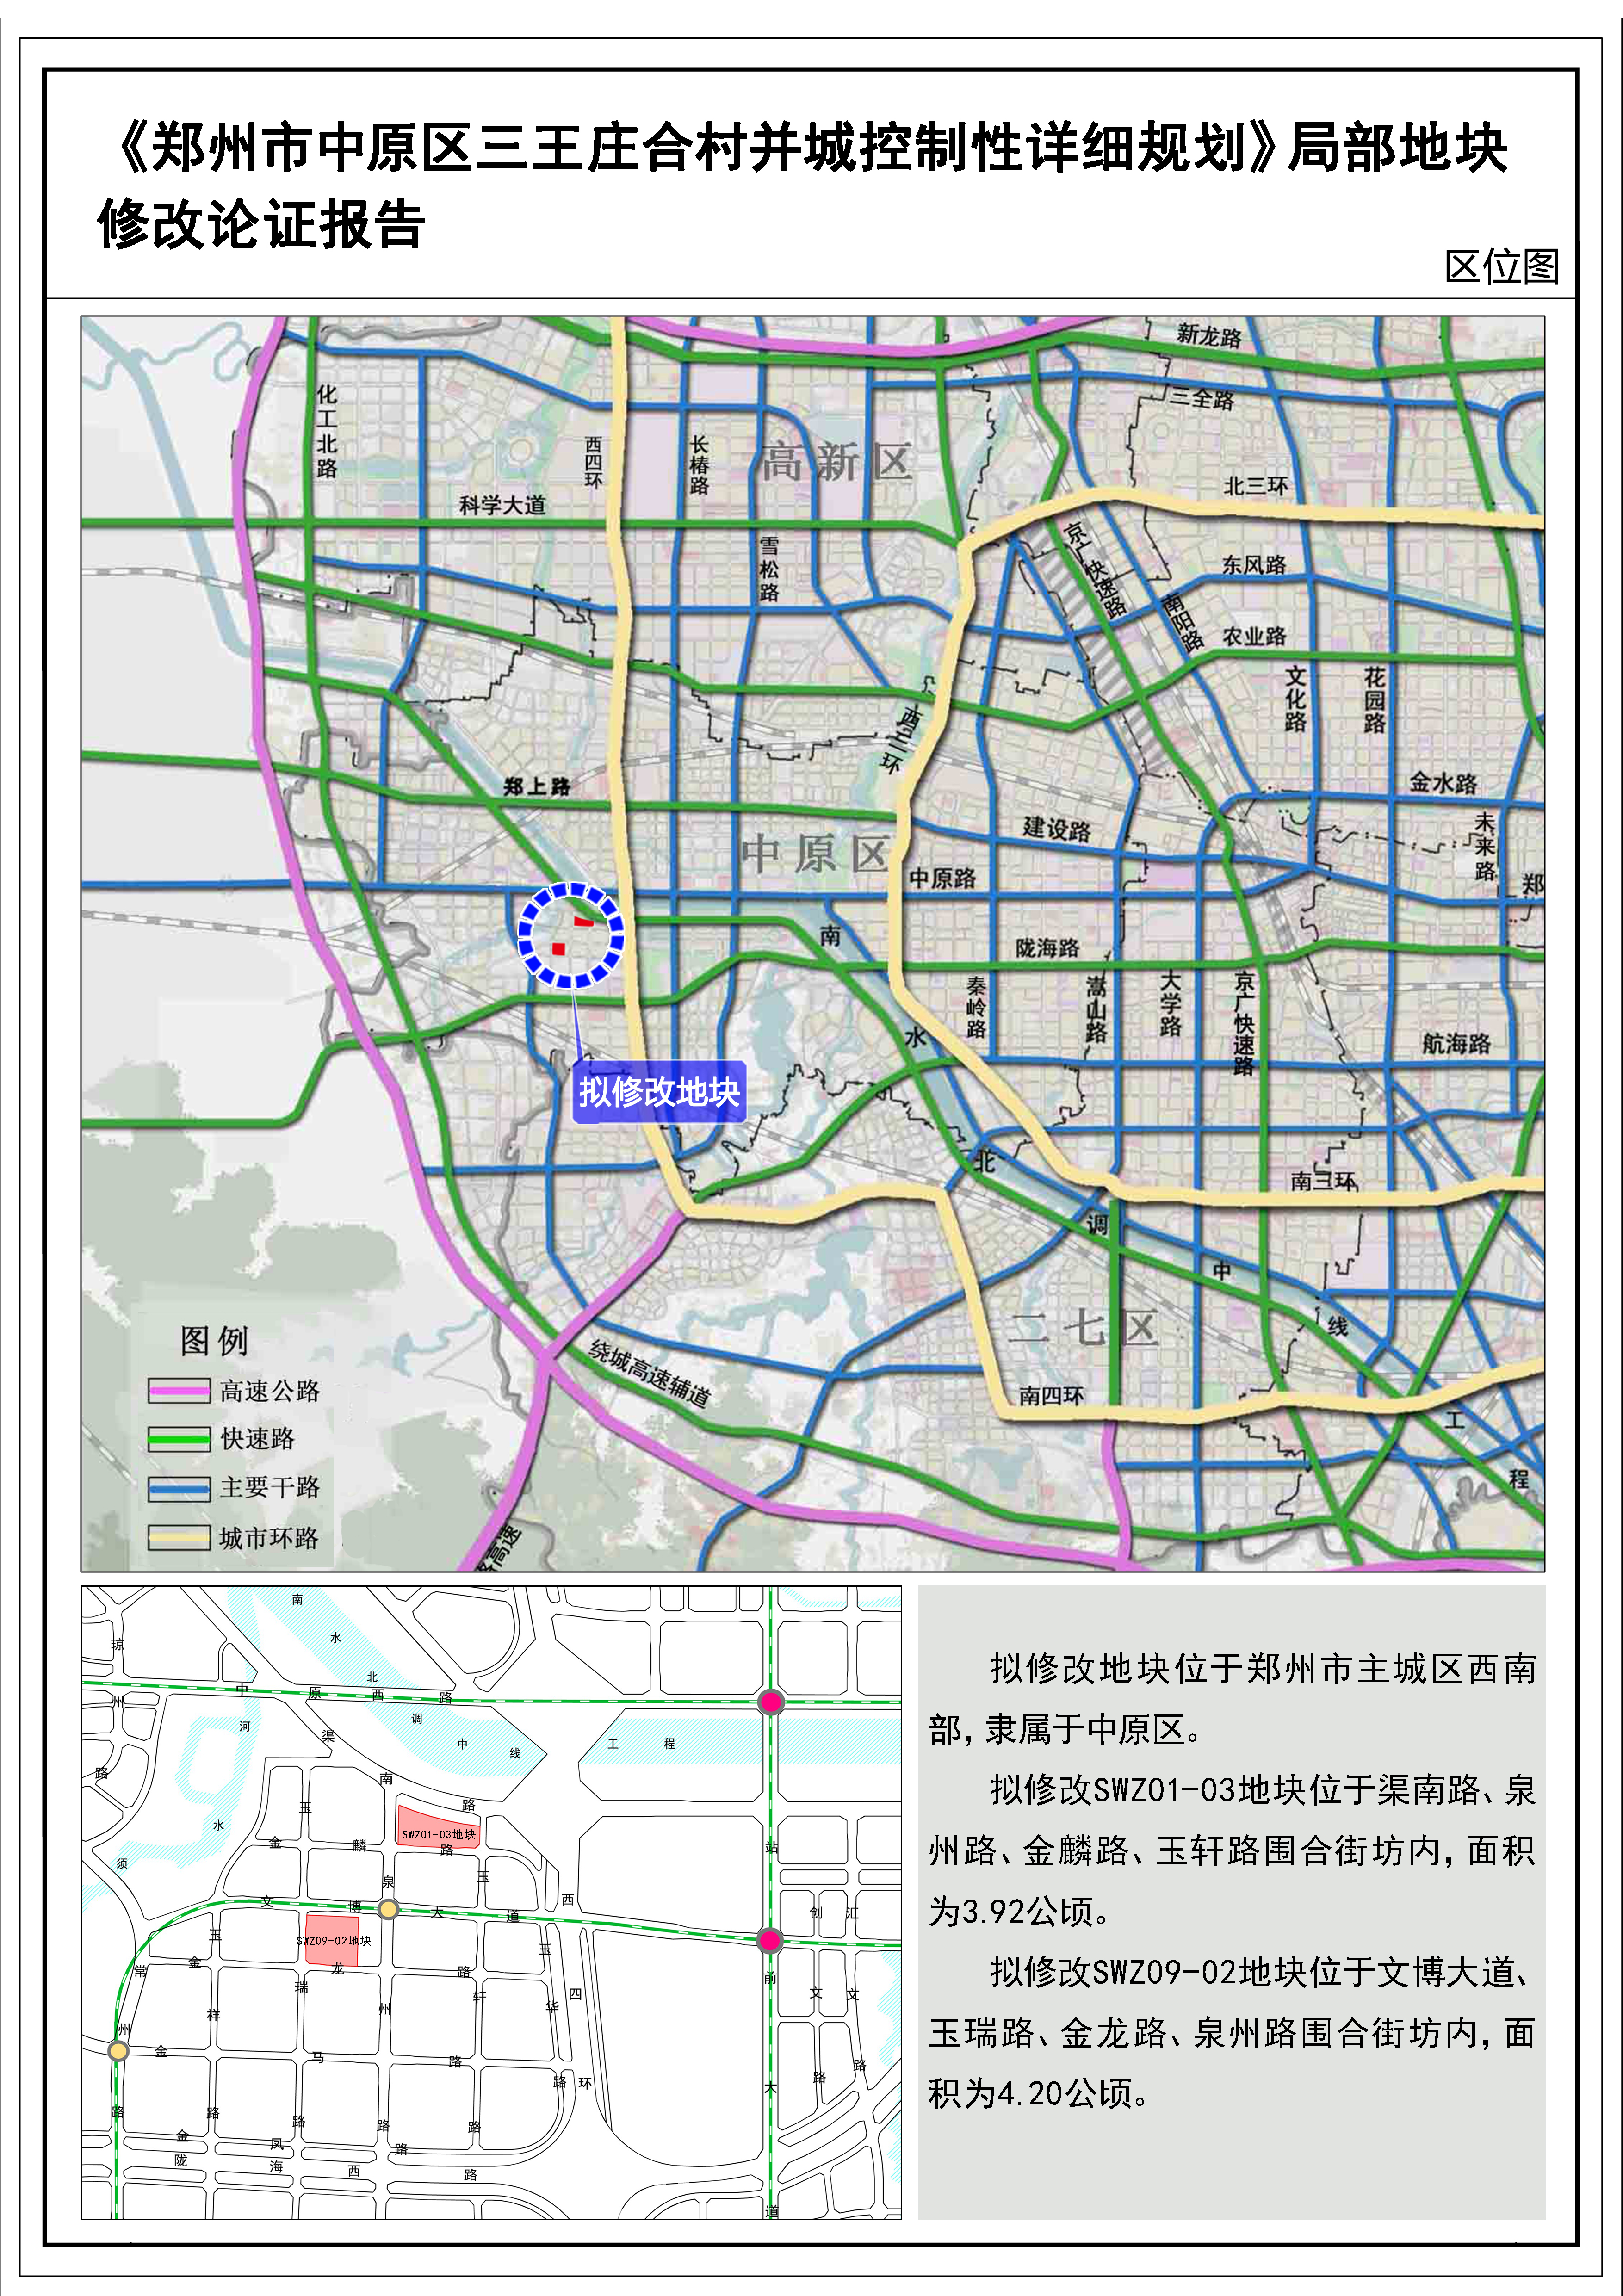 《郑州市中原区三王庄合村并城控制性详细规划》 局部地块修改论证